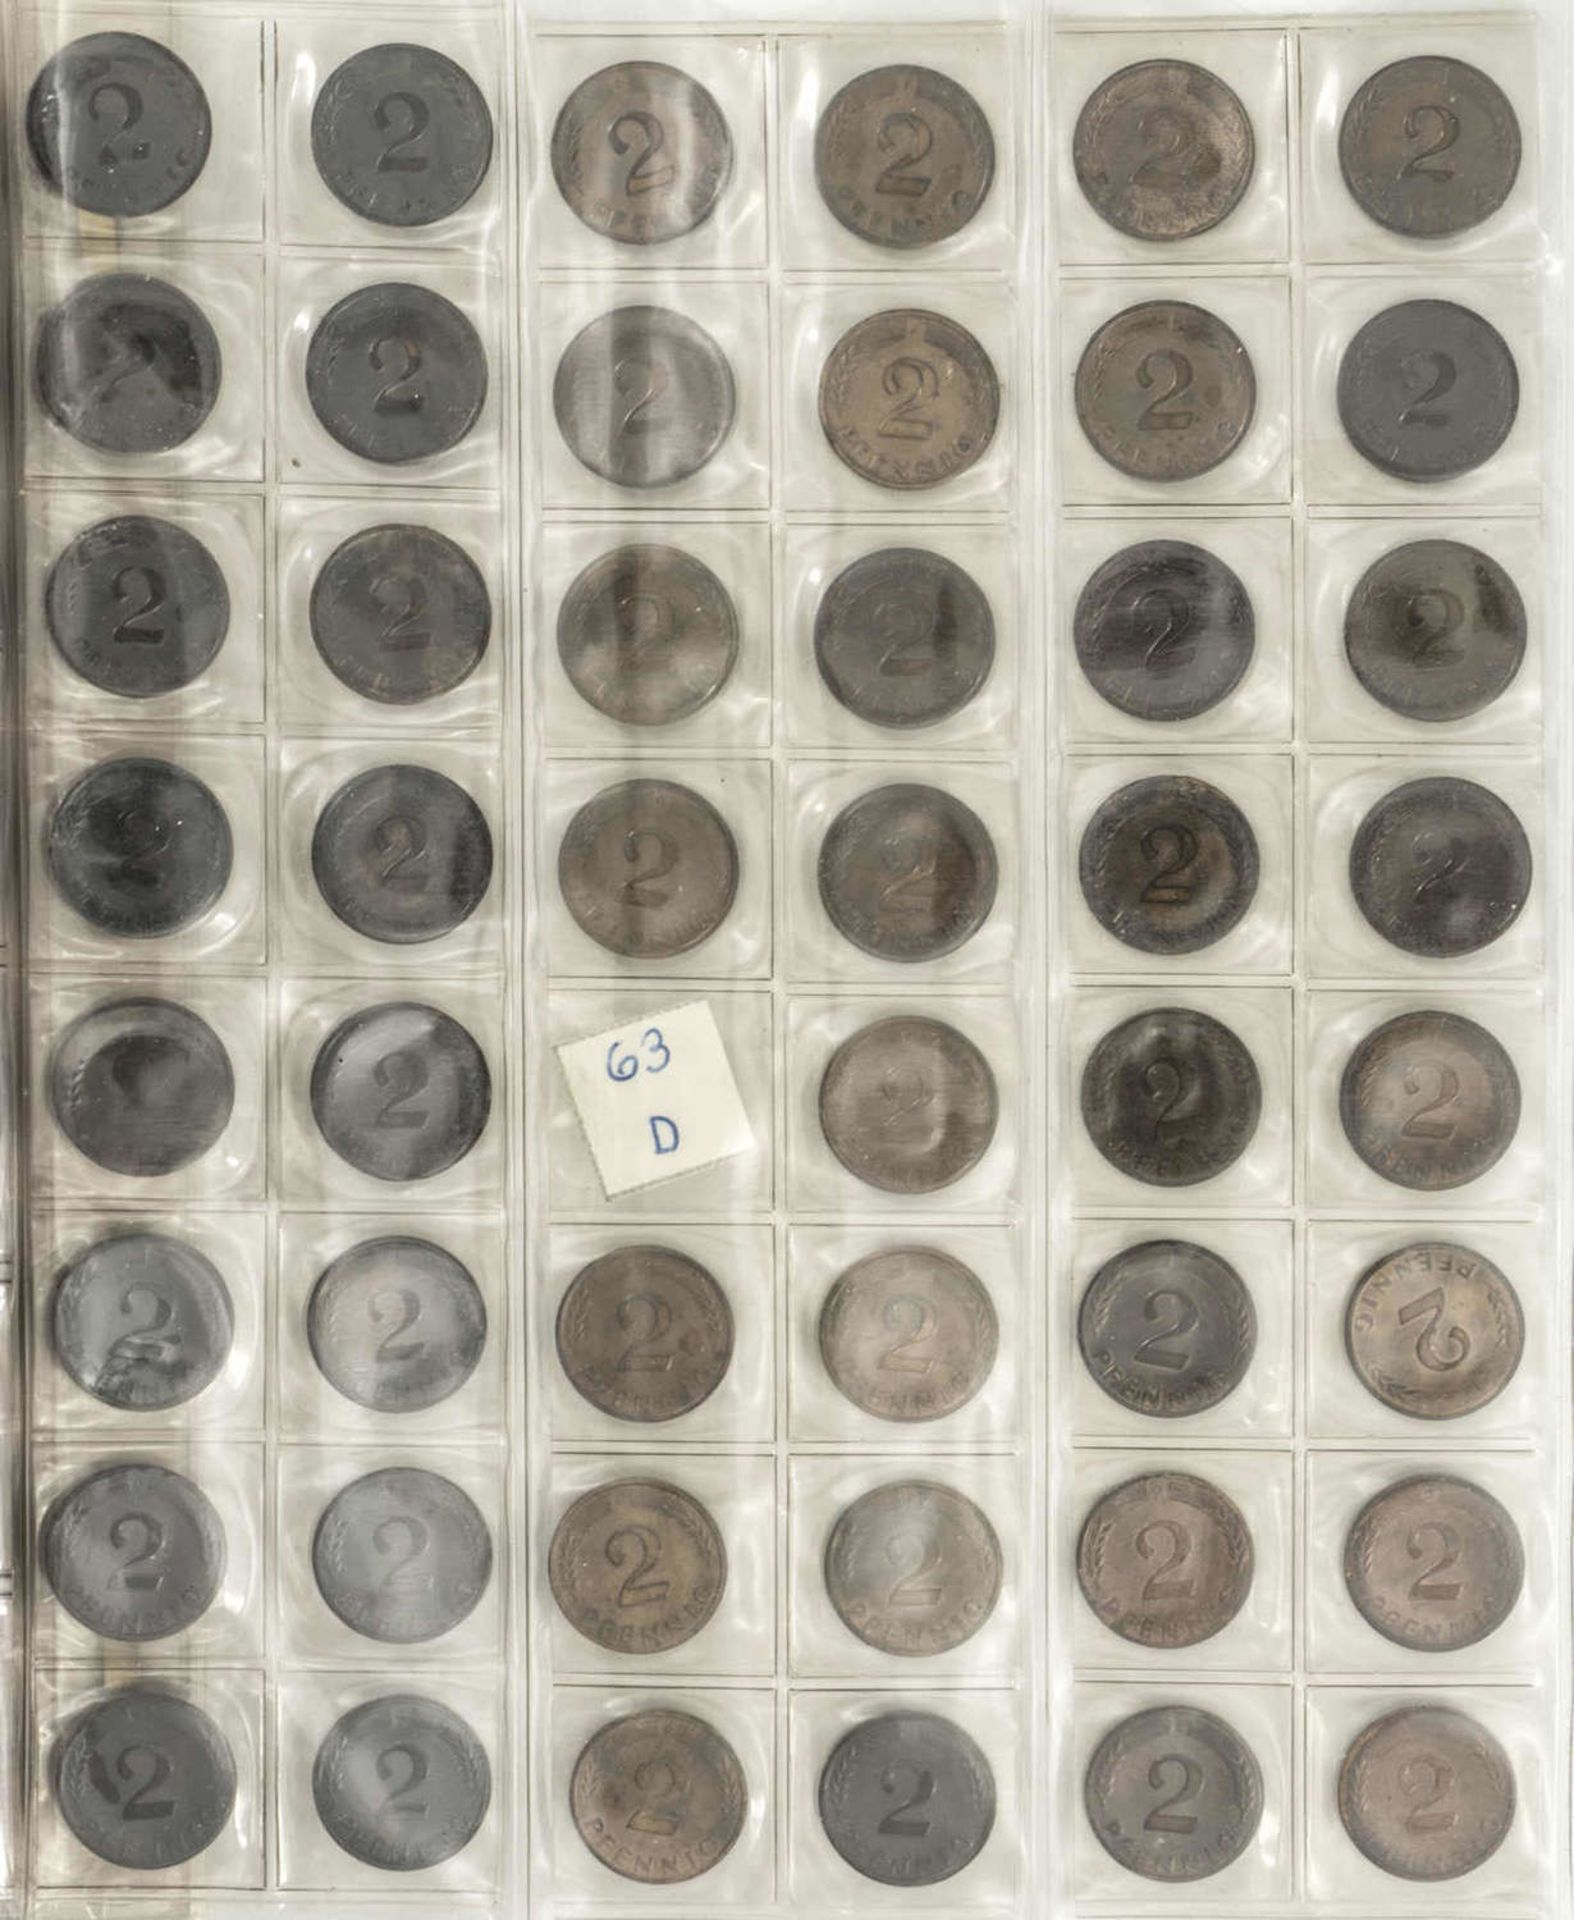 BRD Sammlung 1 Pfennig und 2 Pfennig - Münzen. Überwiegend alle vier Münzprägestätten. Dazu ei - Image 5 of 5